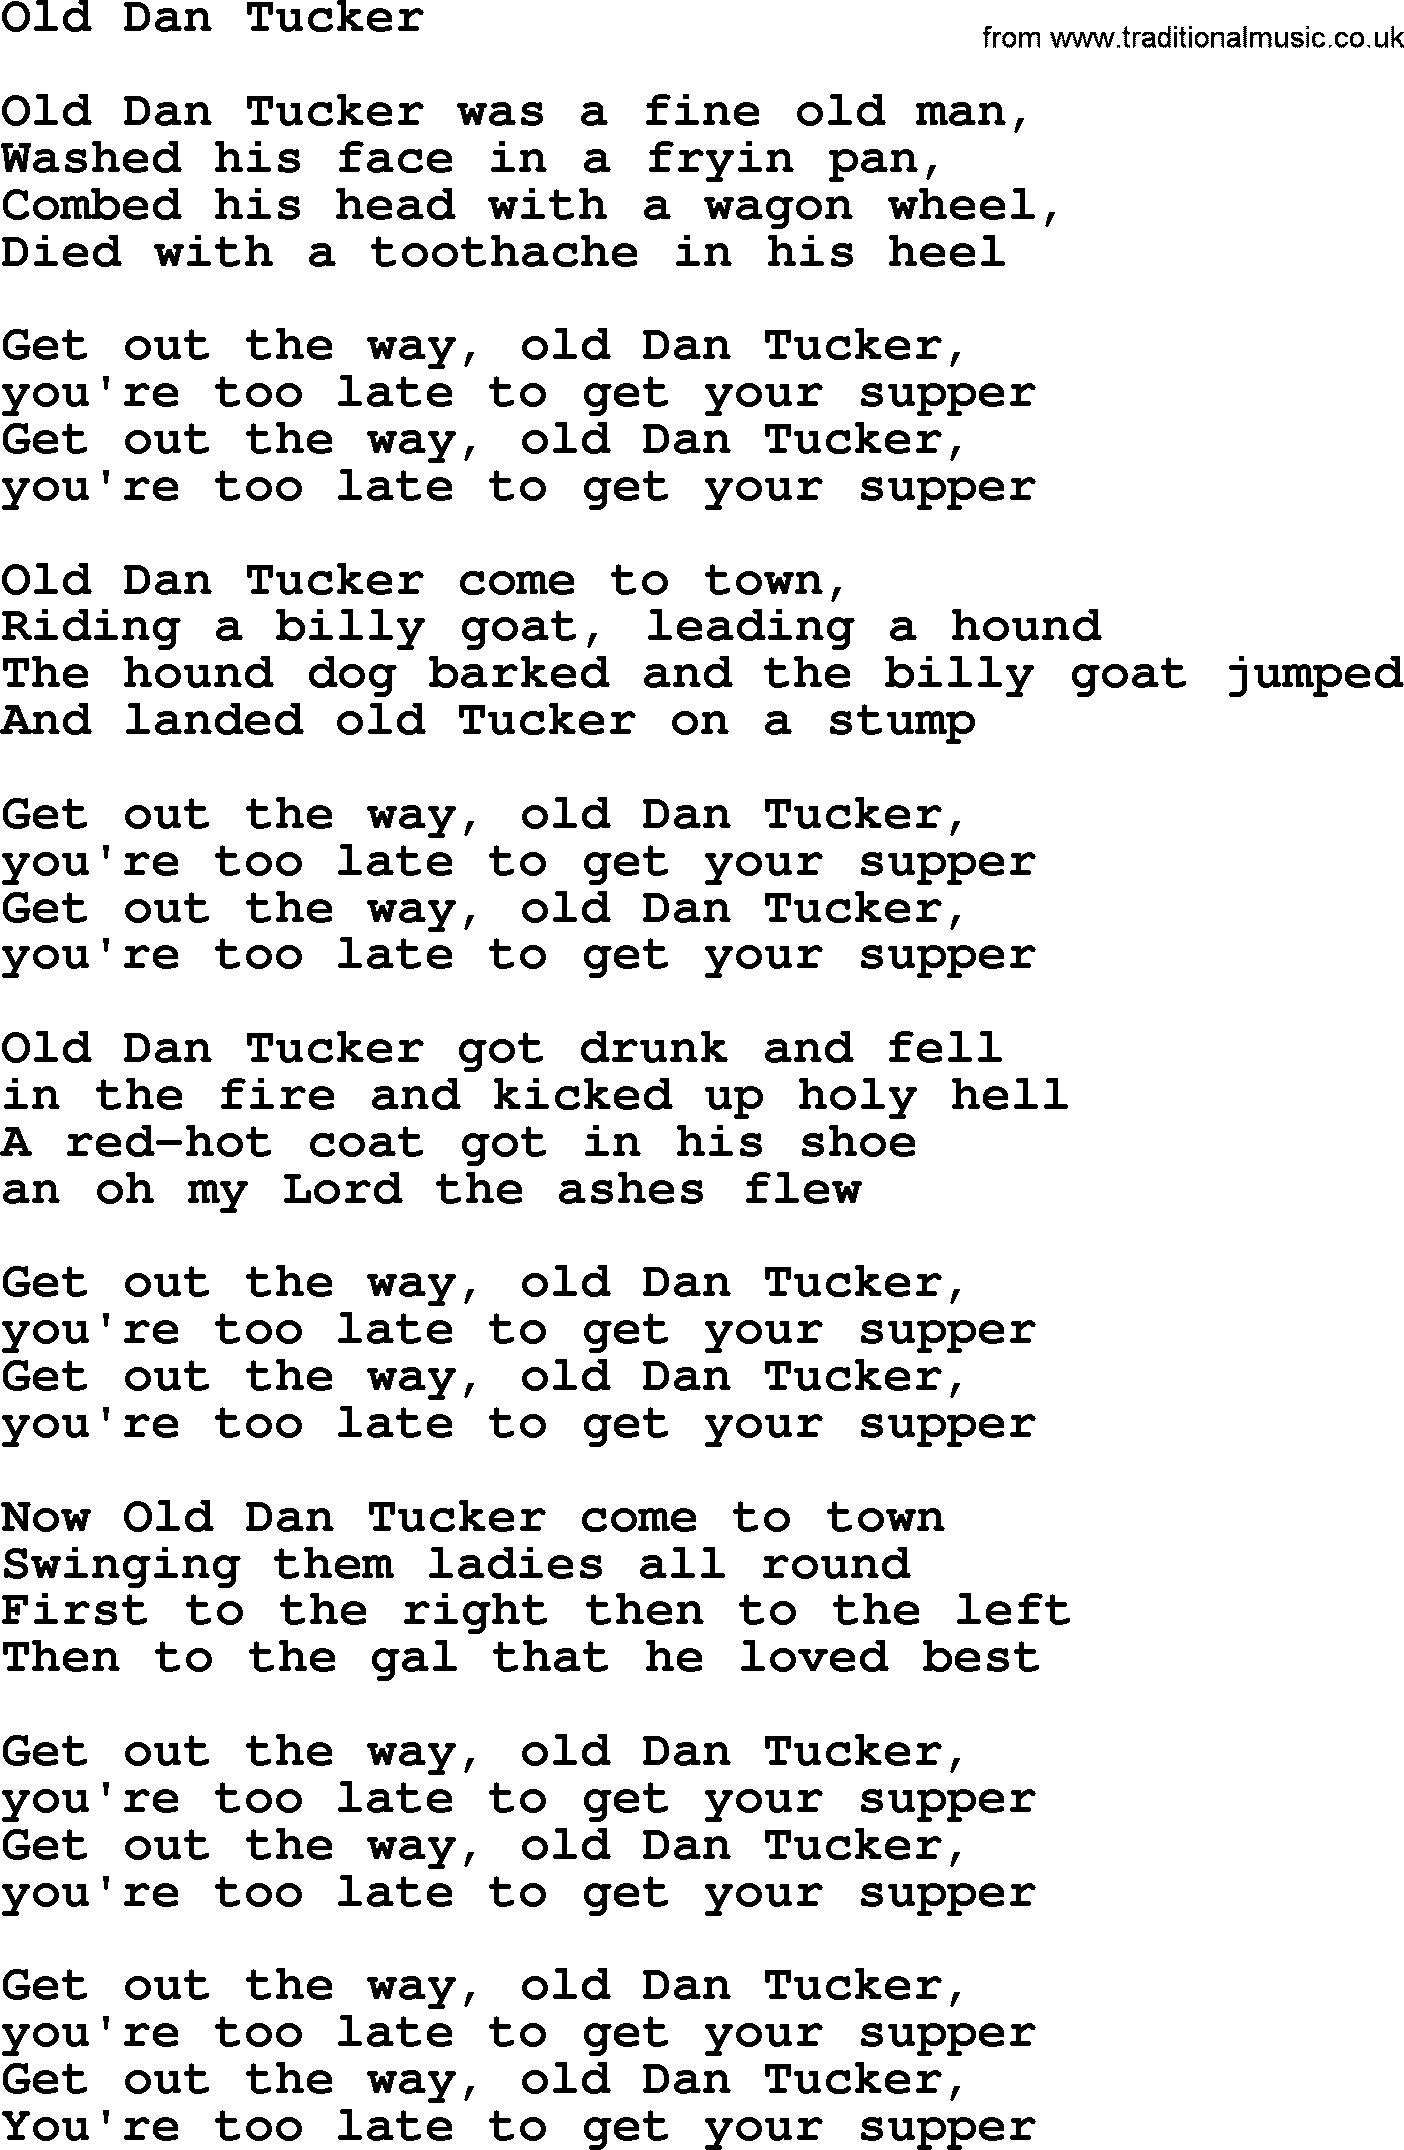 Bruce Springsteen song: Old Dan Tucker lyrics